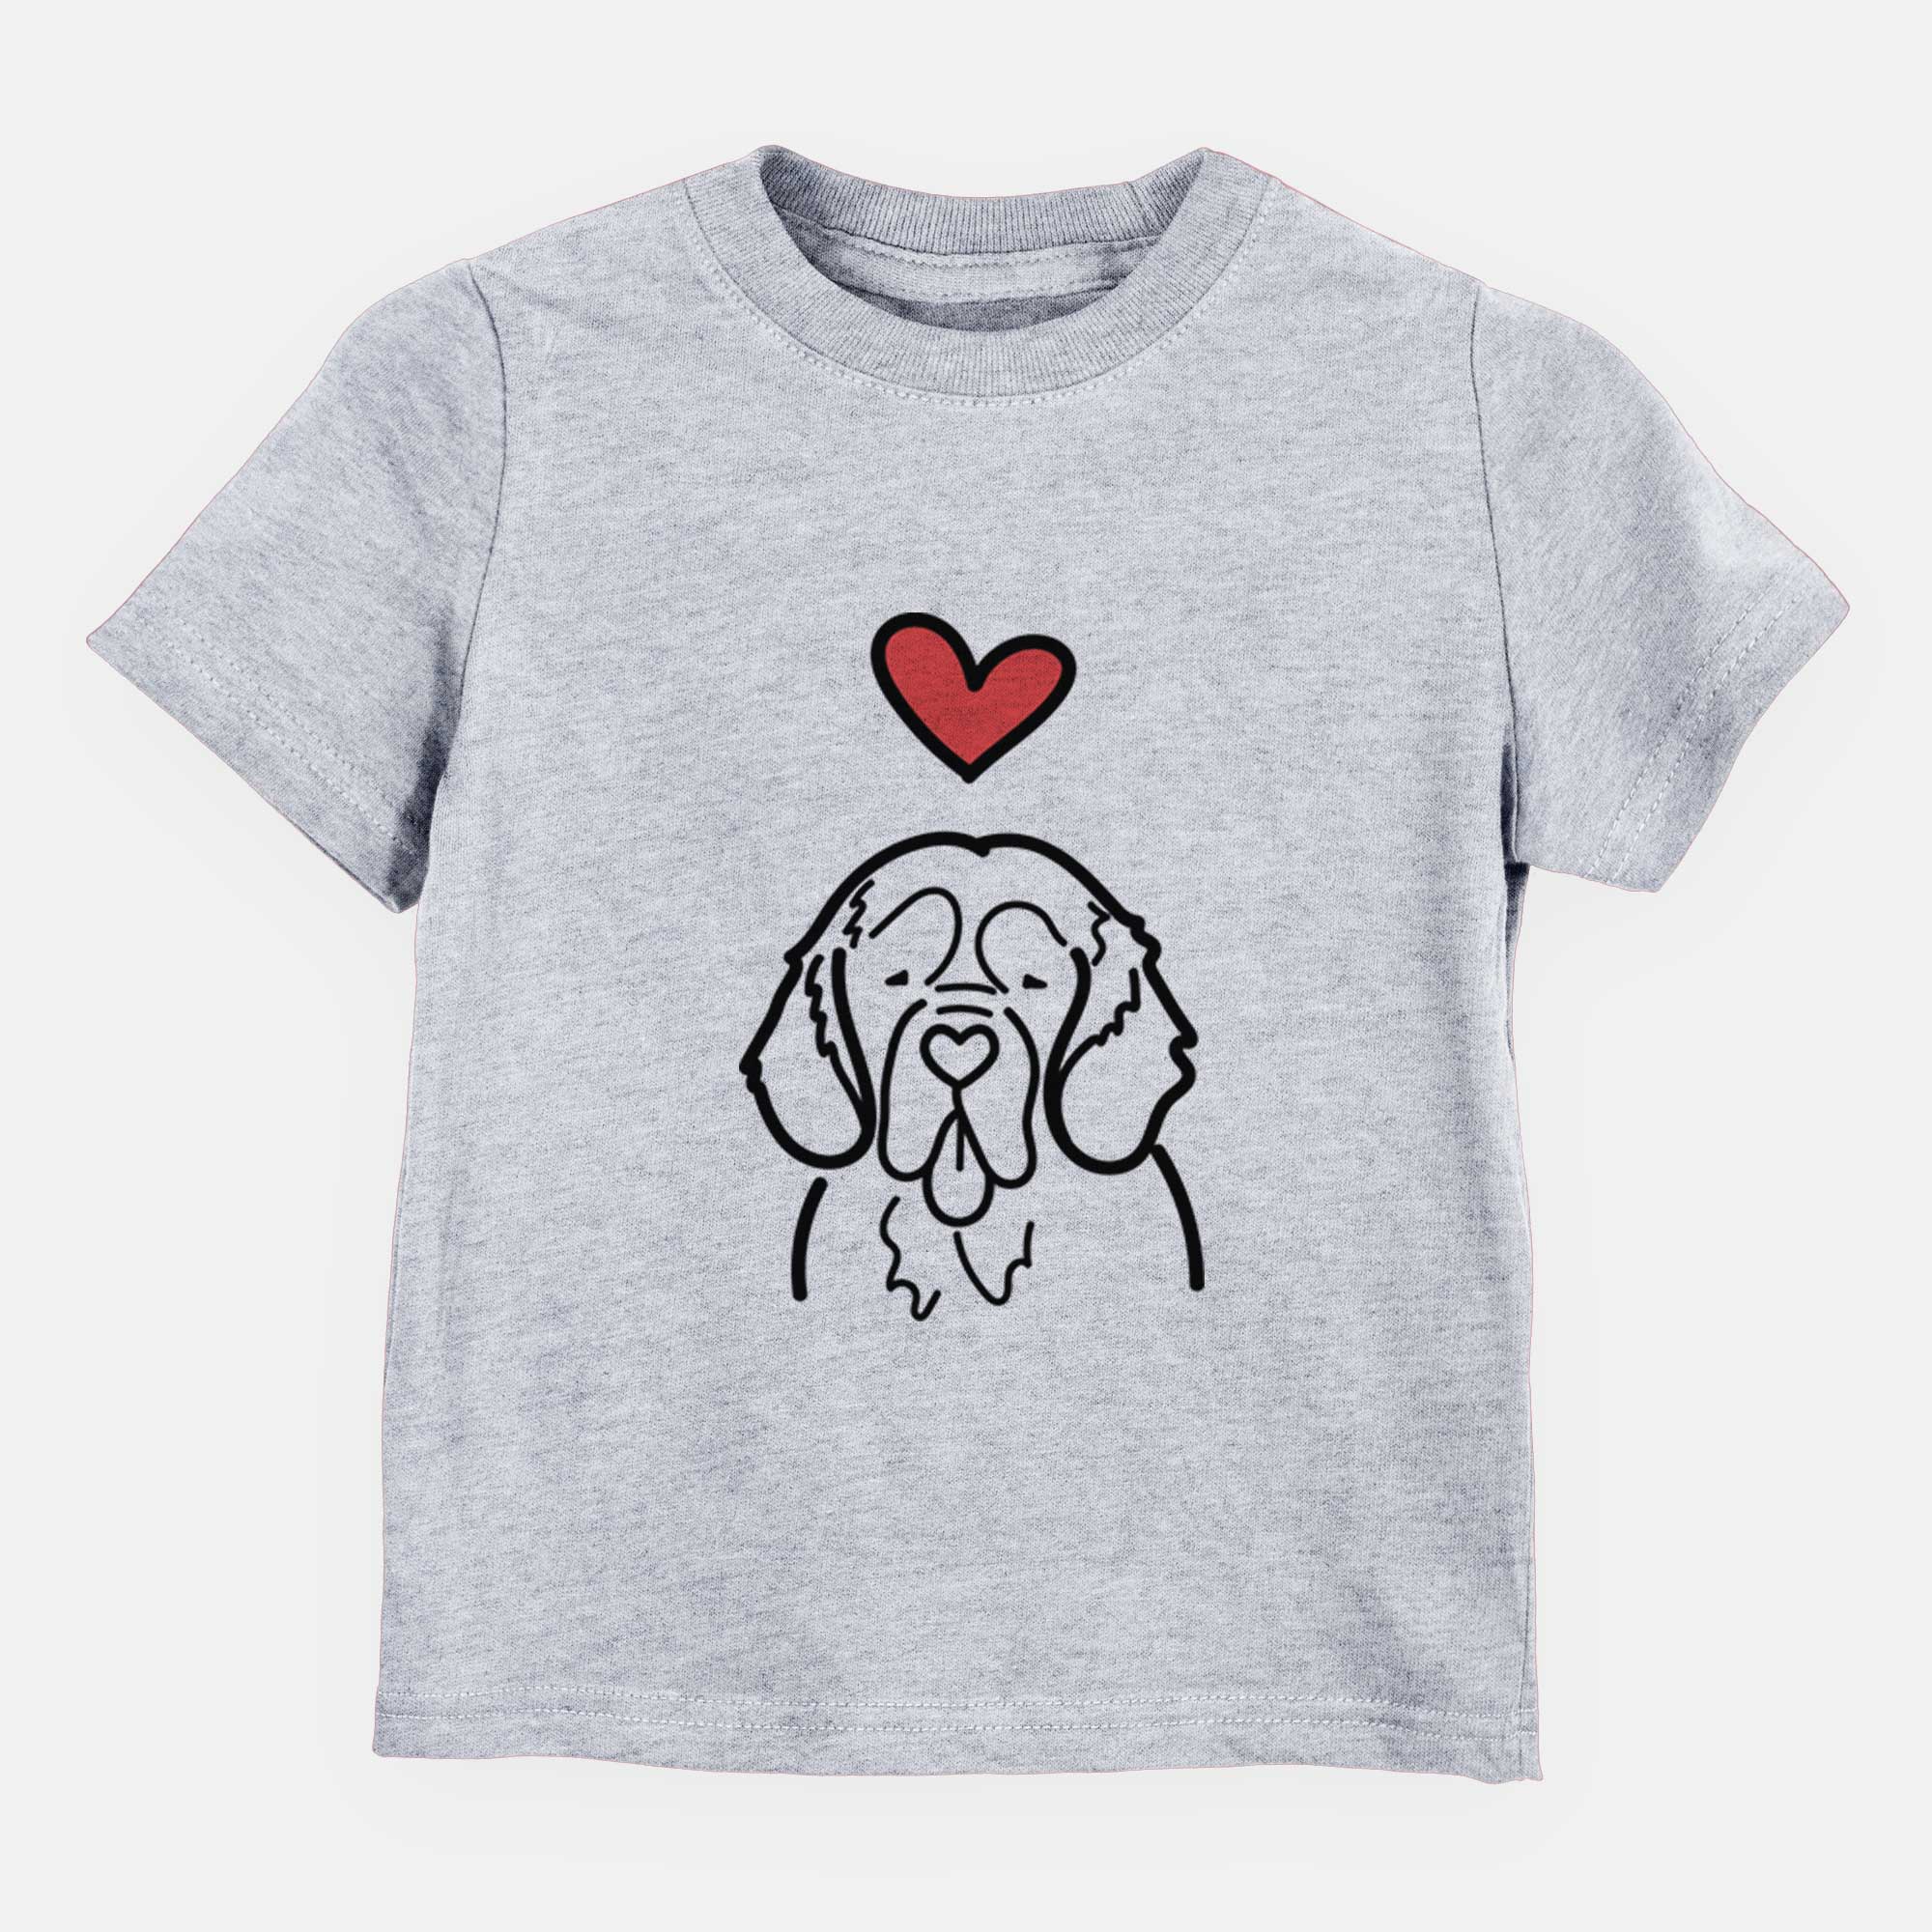 Love Always Clumber Spaniel - Kids/Youth/Toddler Shirt